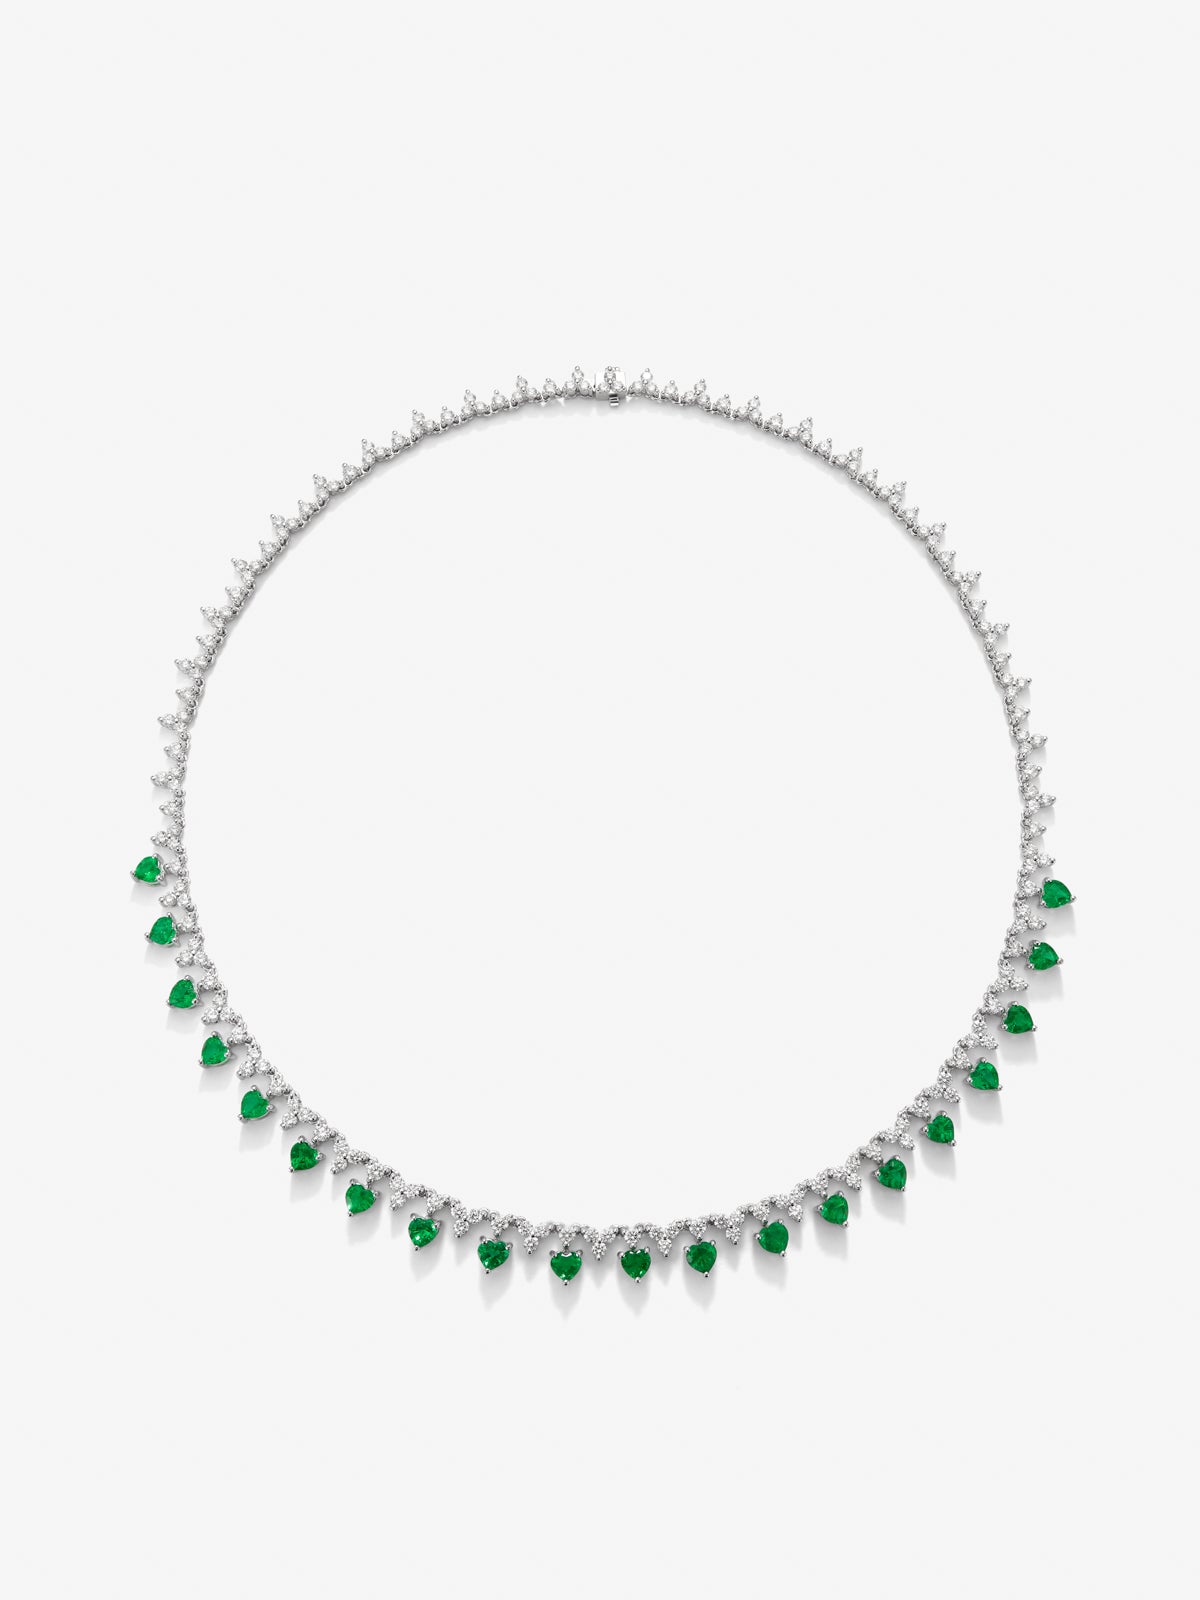 Collar rivière de oro blanco de 18K con esmeraldas verdes en talla corazón de 4,42 cts y diamantes blancos en talla brillante de 6,76 cts